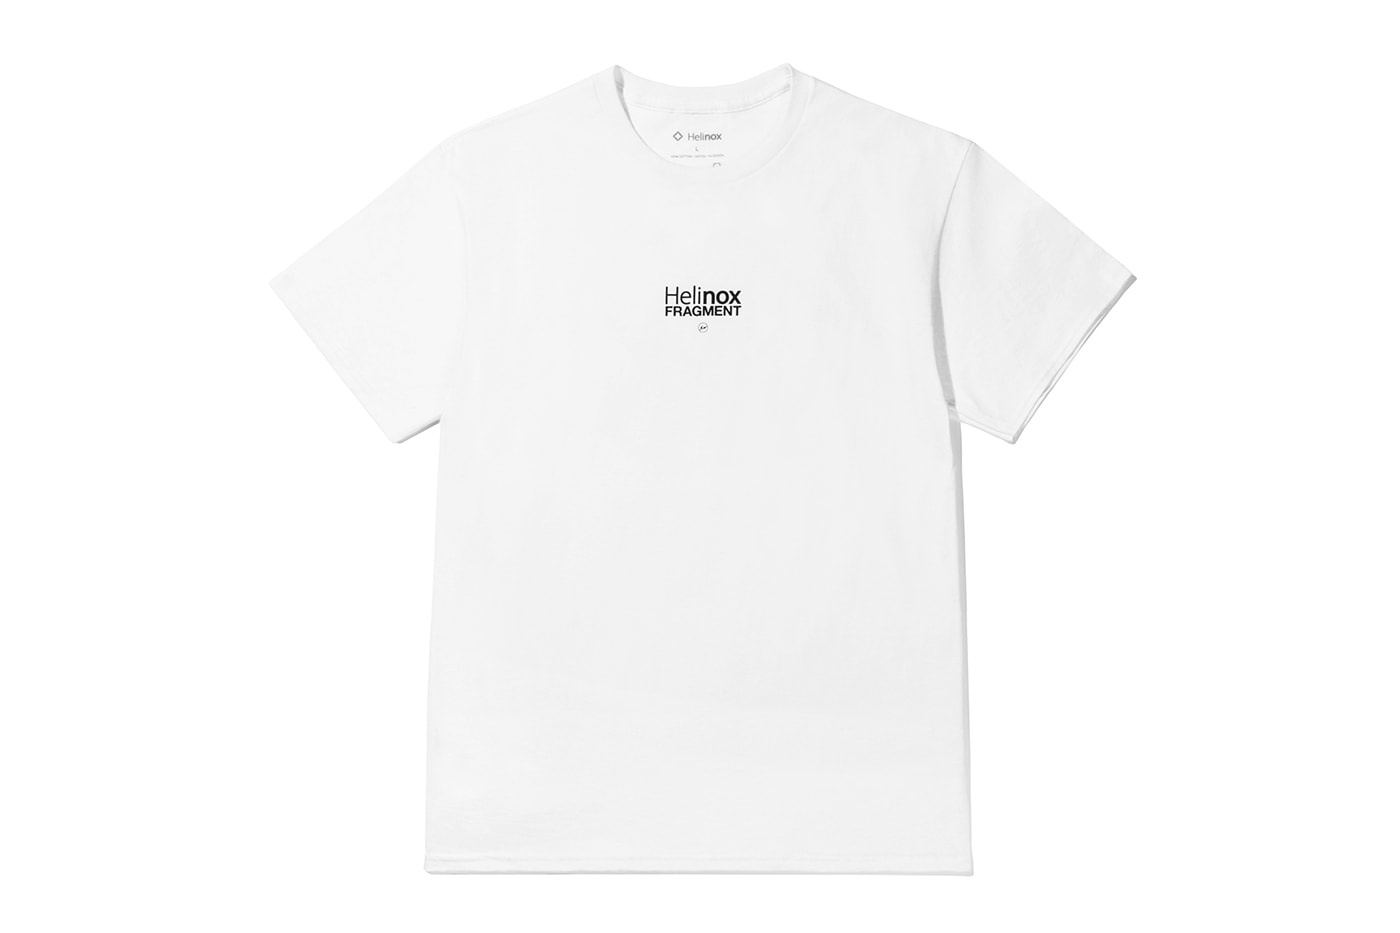 Helinox 正式推出 fragment design 限量聯名 T-shirt 慶祝釜山店鋪開幕